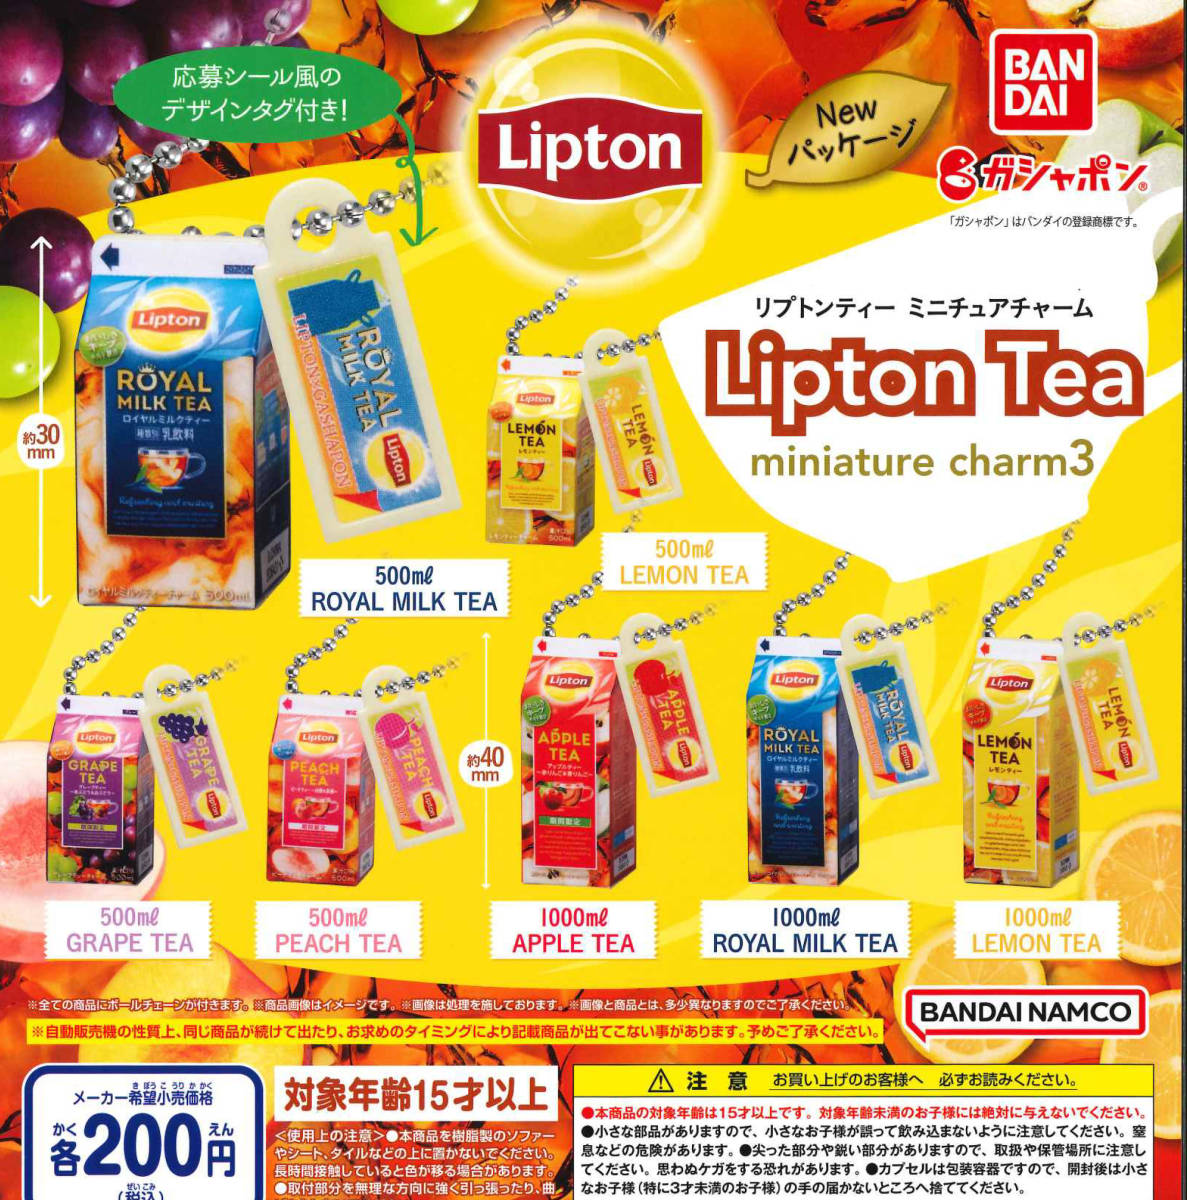 リプトンティー ミニチュアチャーム Lipton Tea miniature charm3 全7種セット ガチャ 送料無料 匿名配送